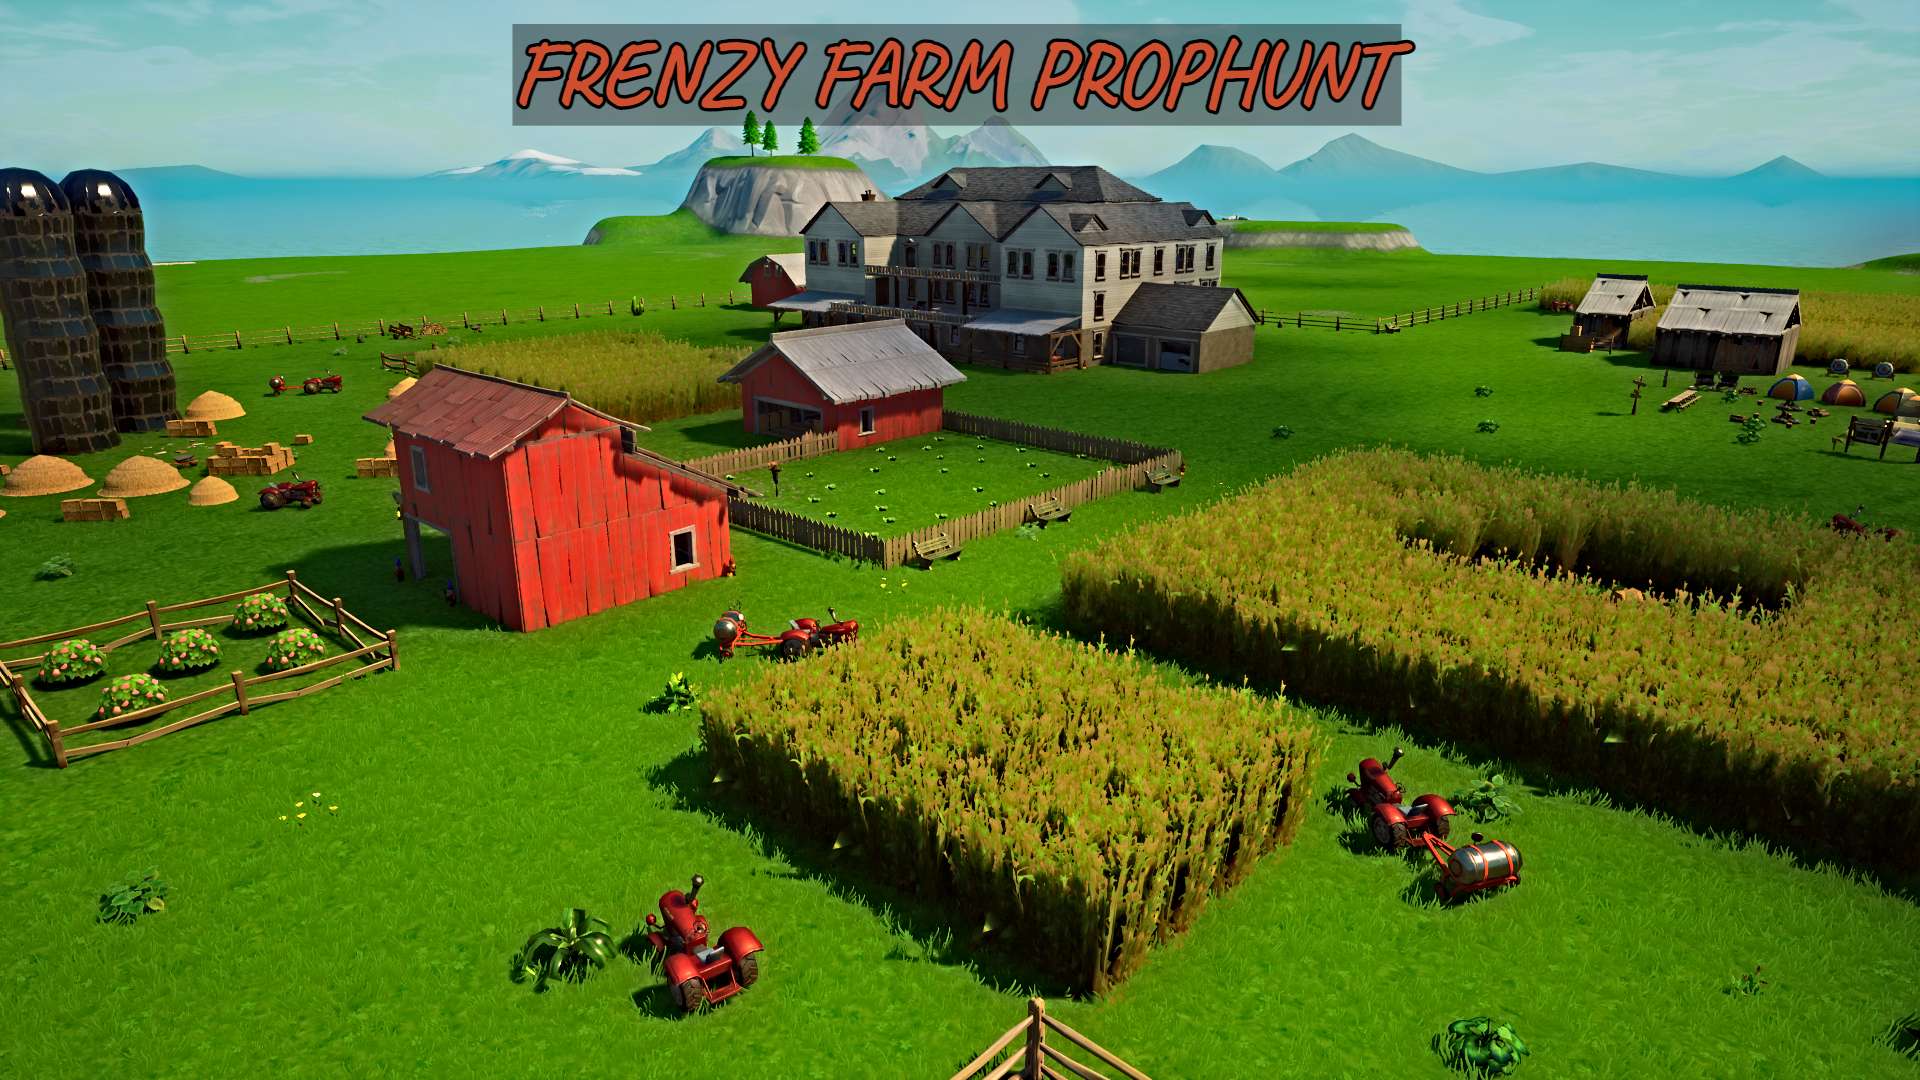 FRENZY FARM PROPHUNT